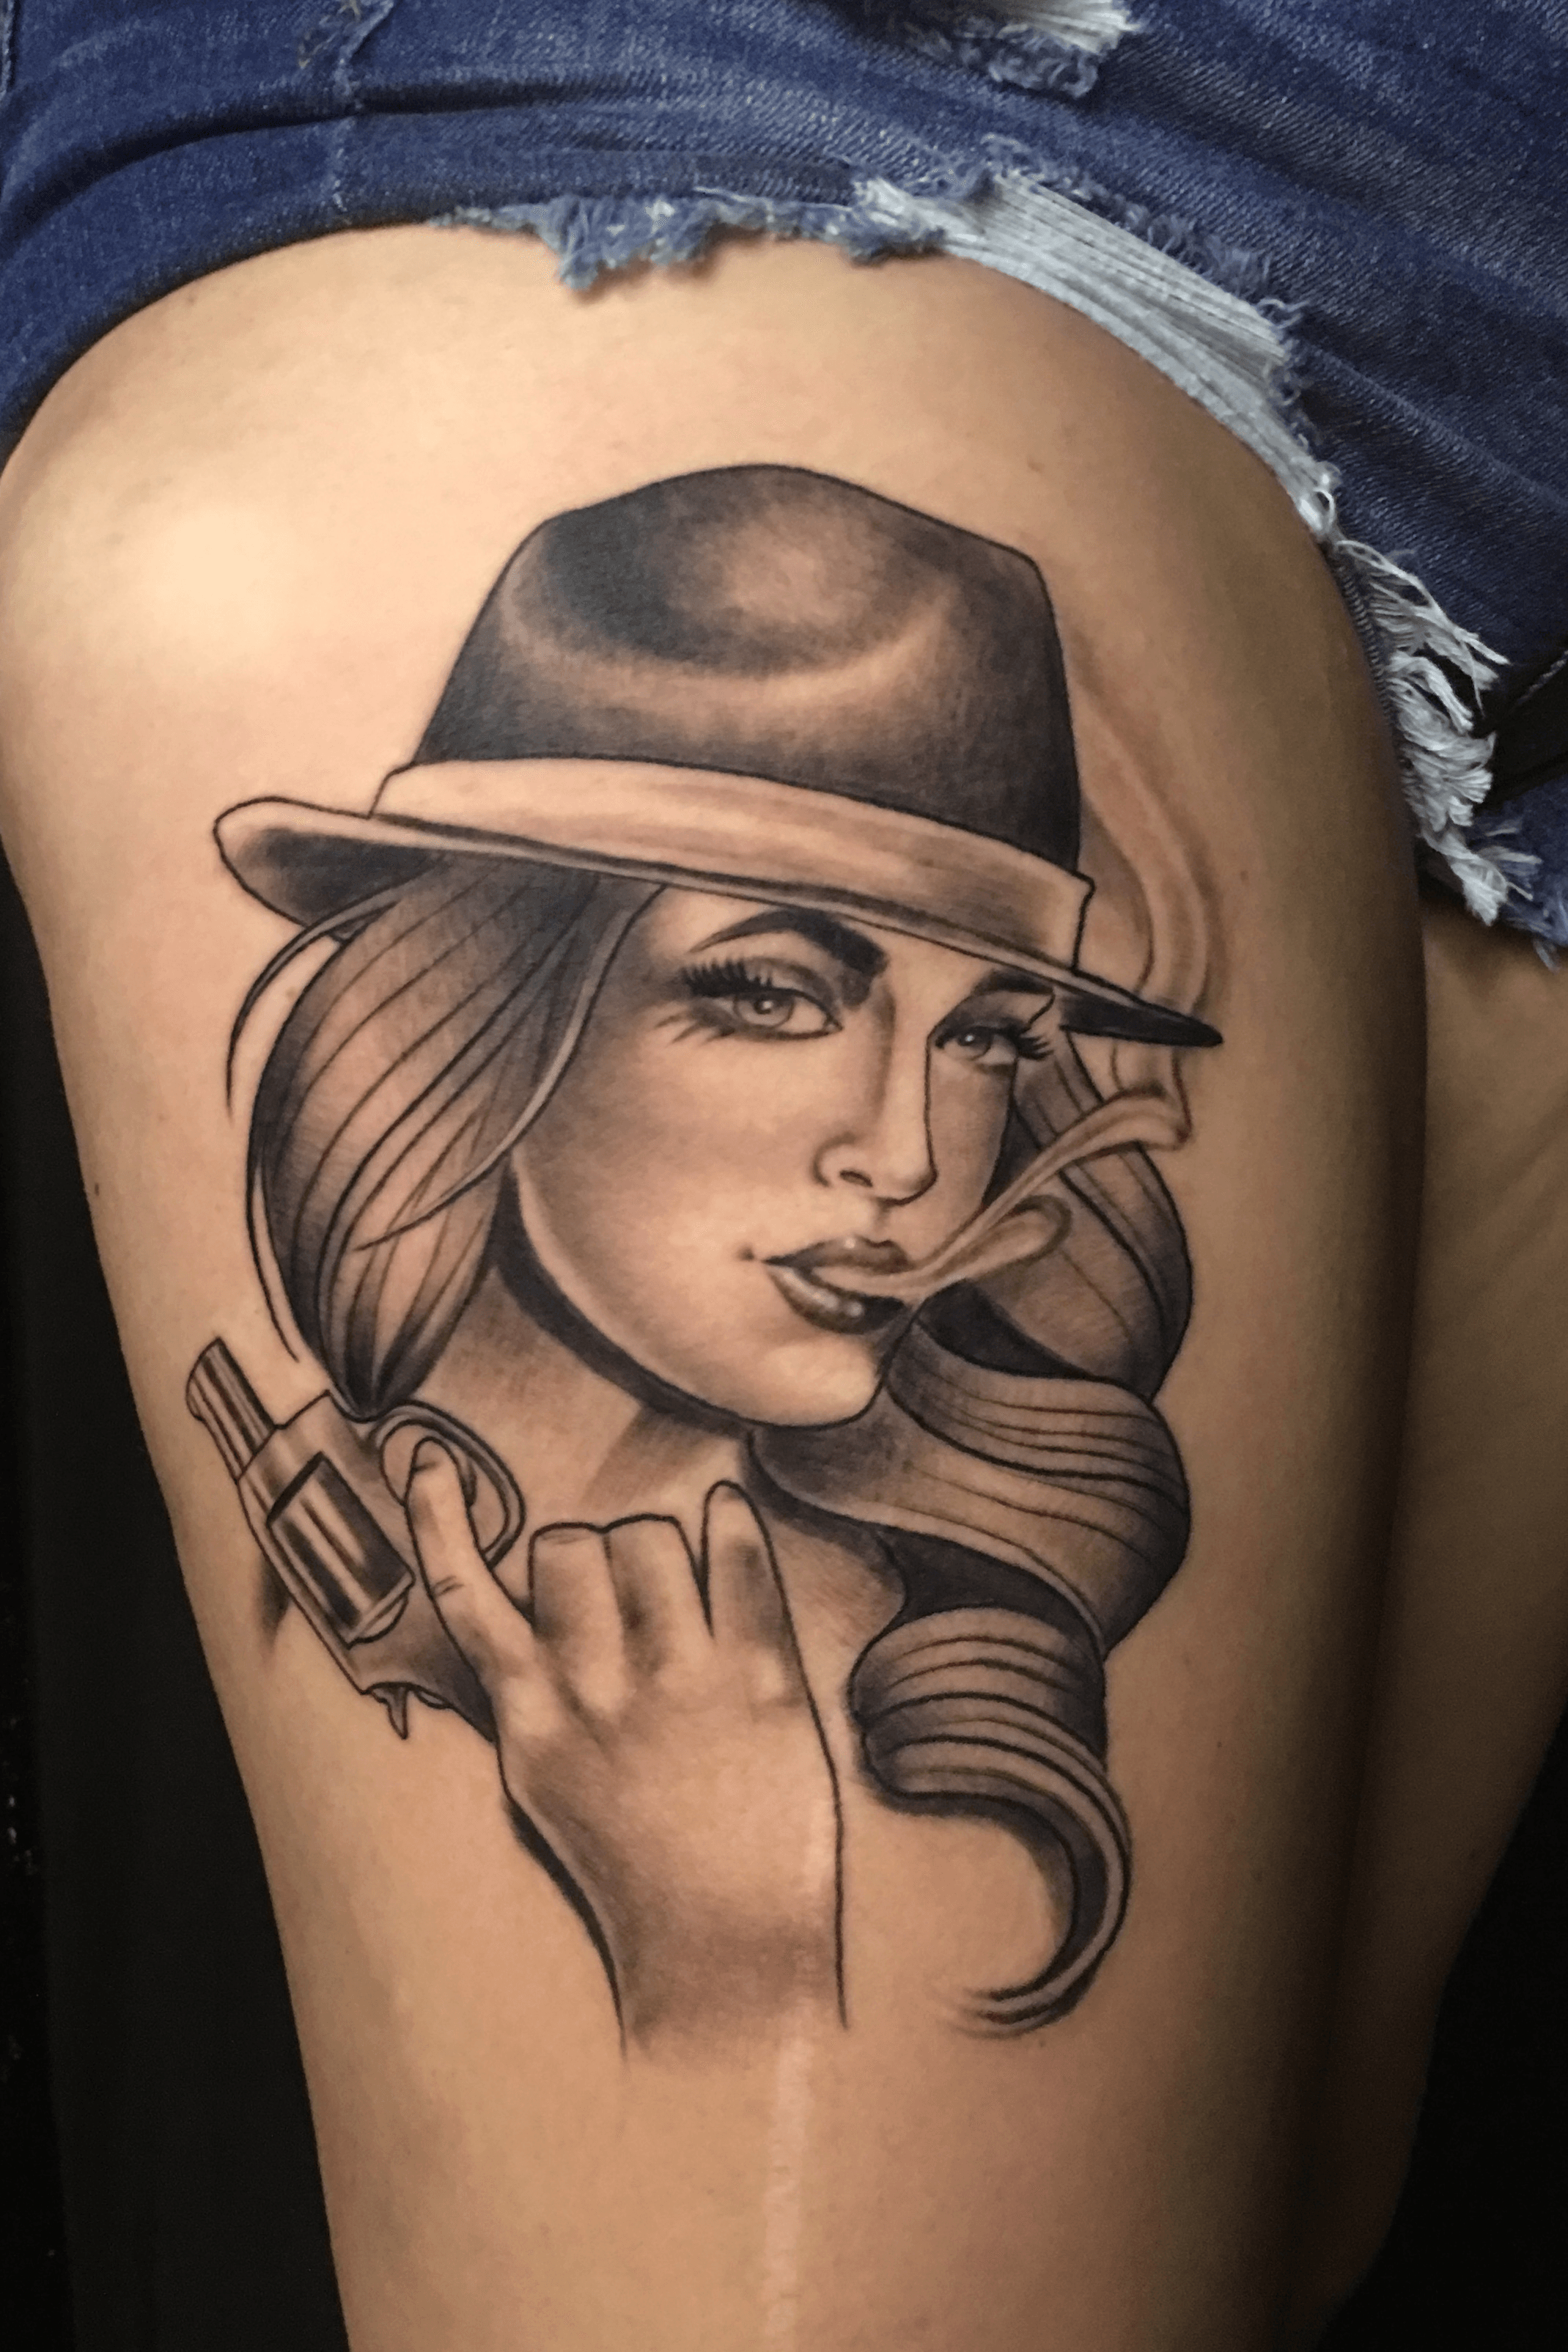 gangster tattoos for girls